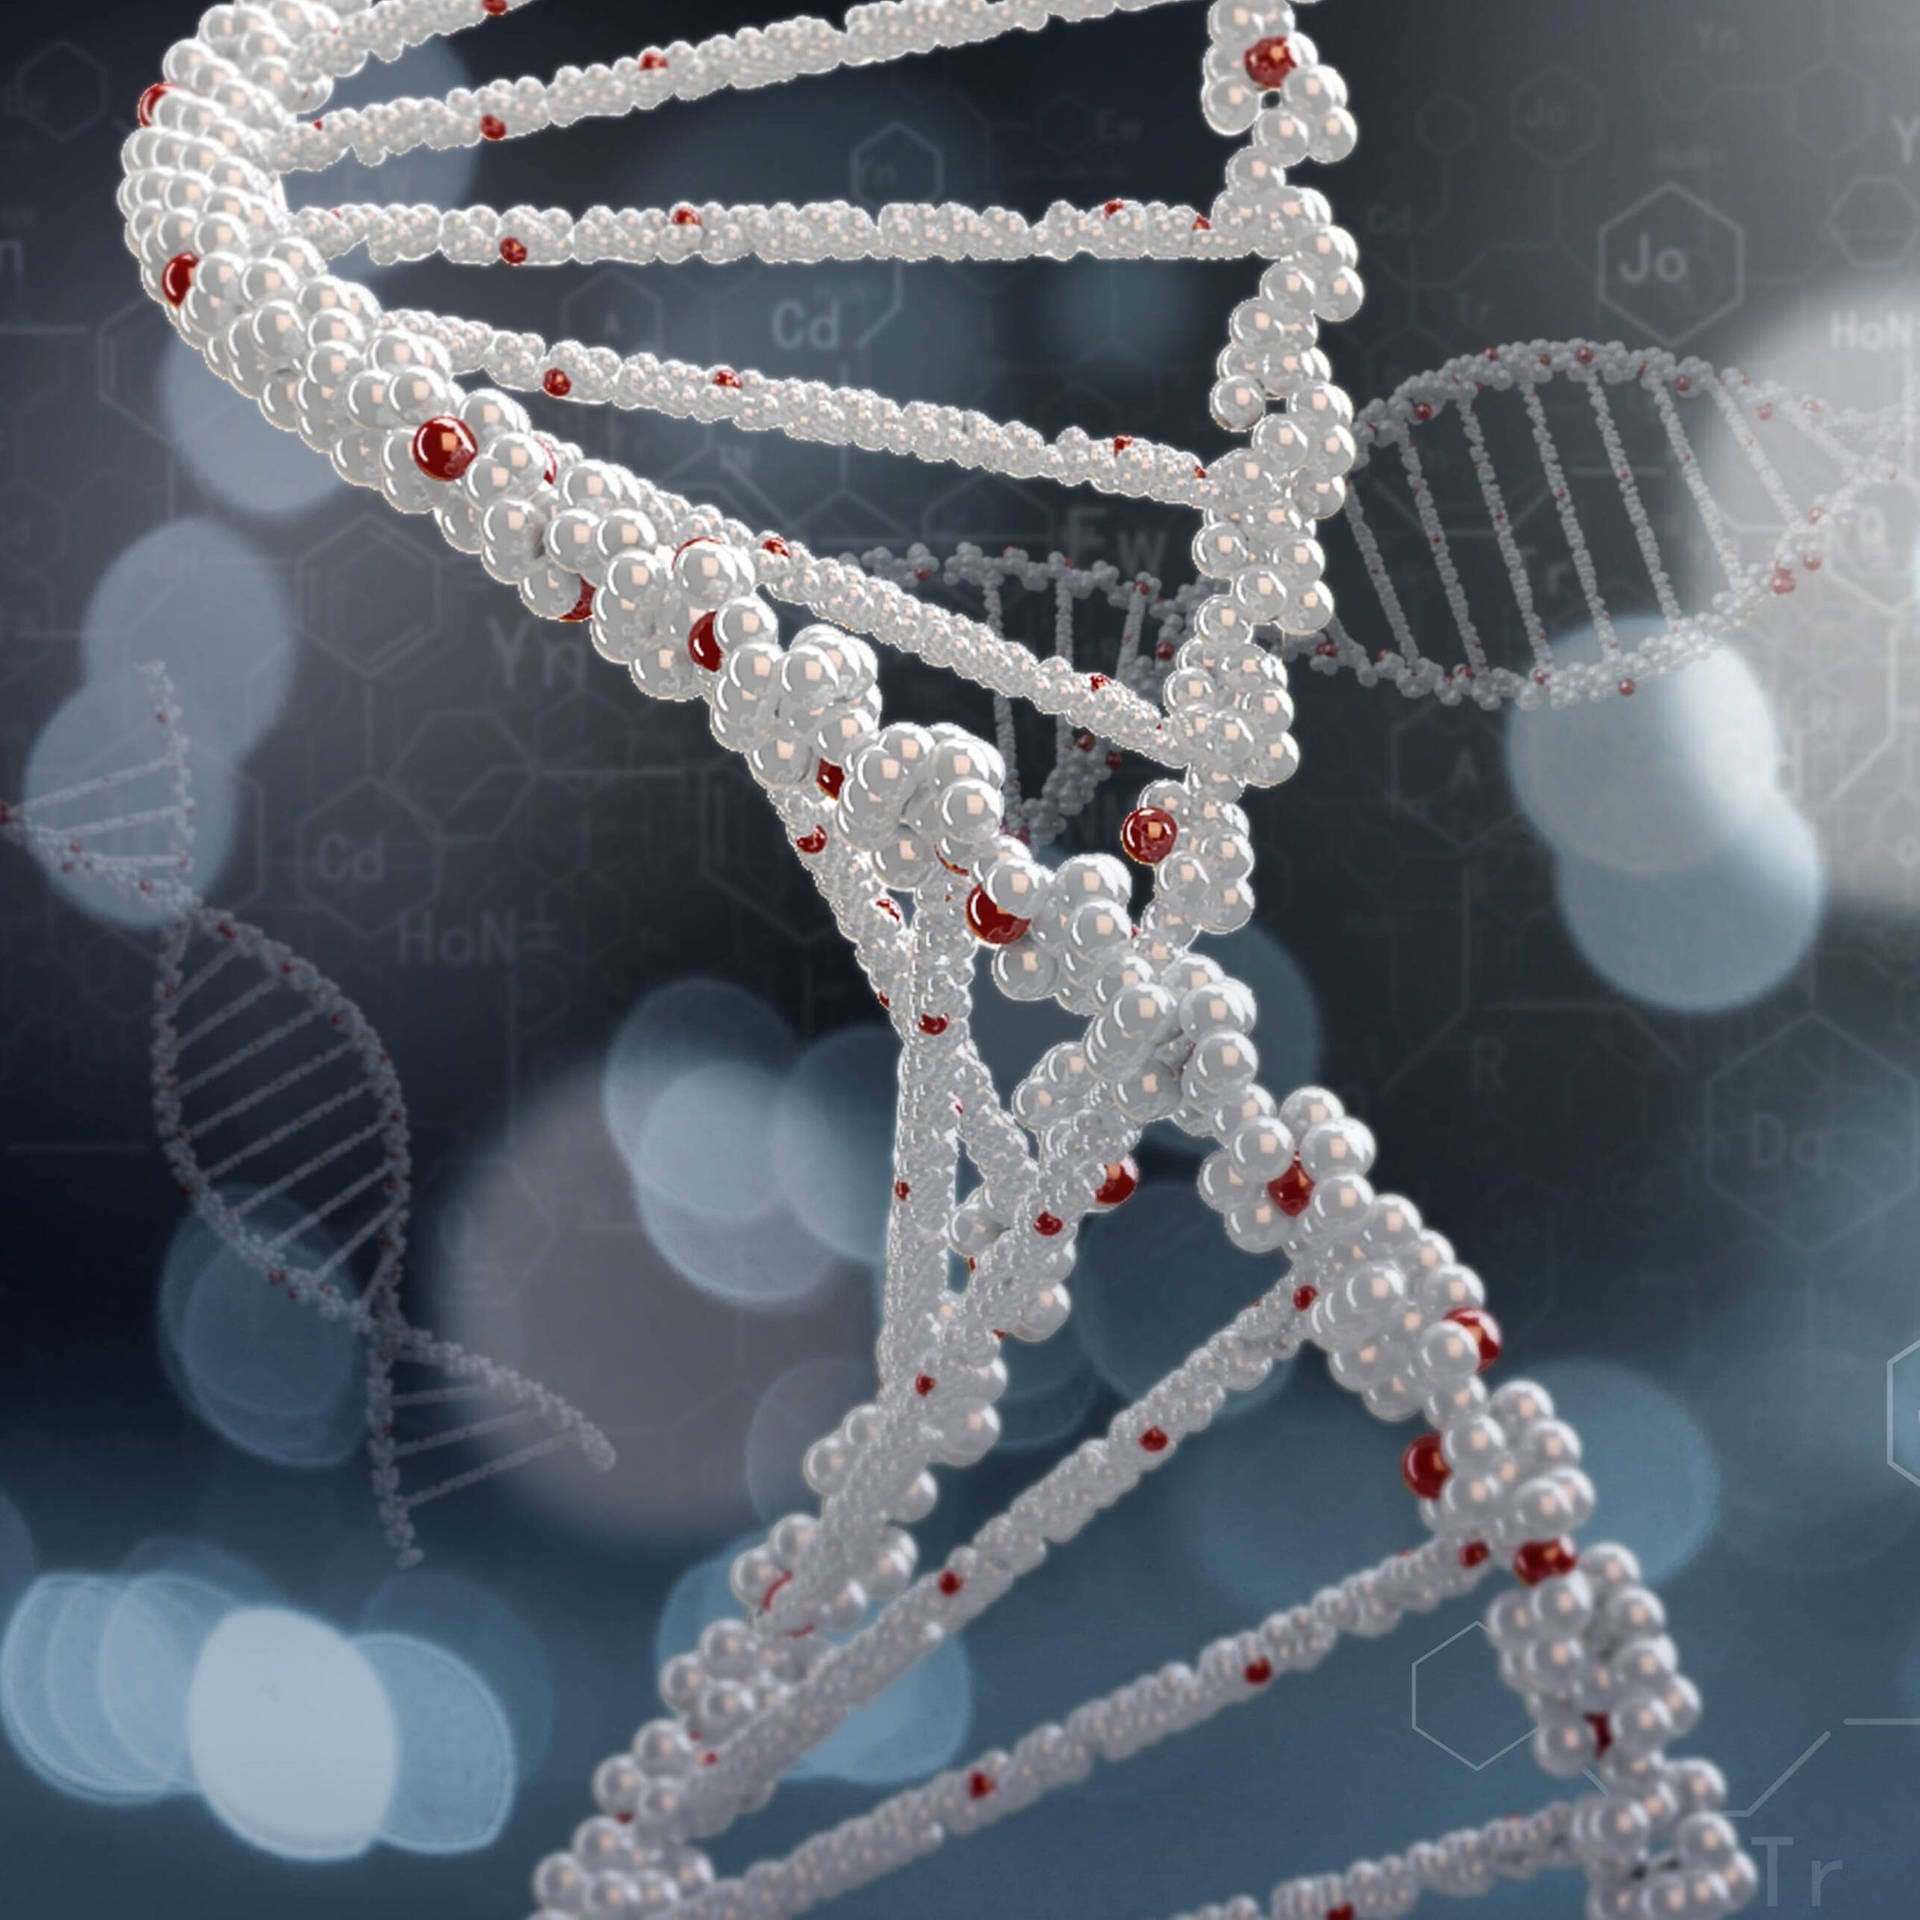 Unsere DNA – Das Prinzip des Lebens